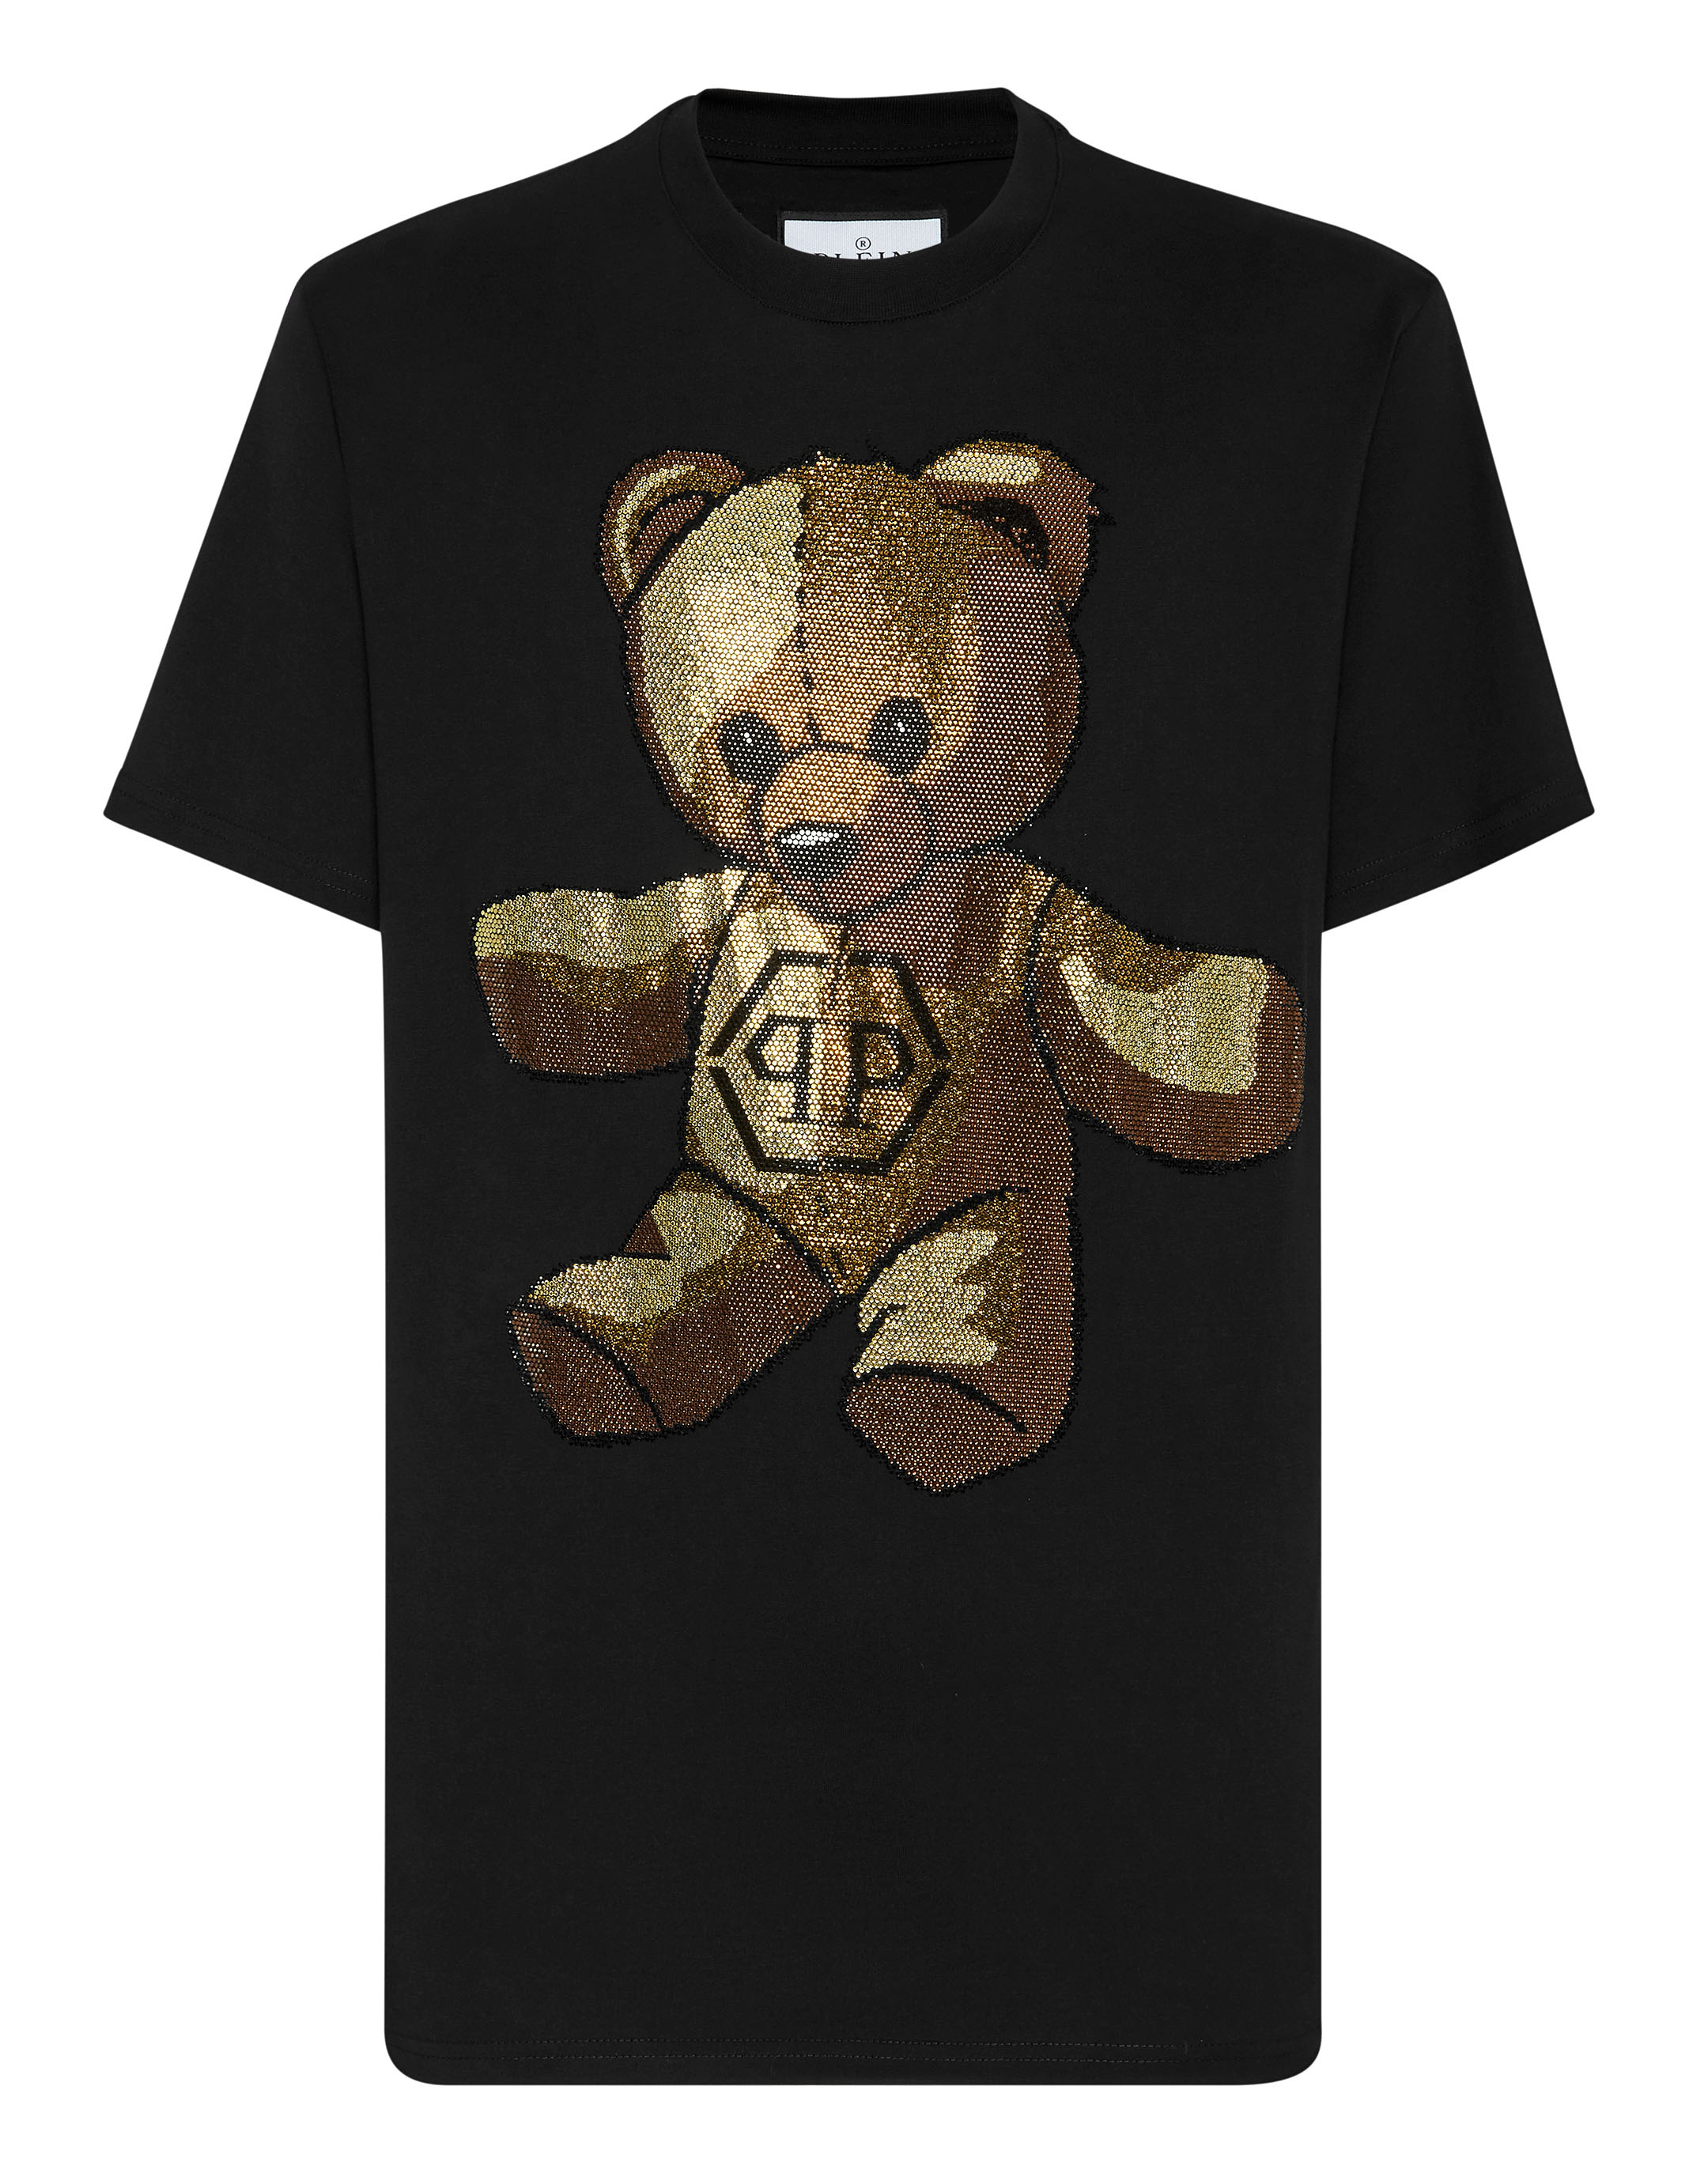 LV Bear Tshirt